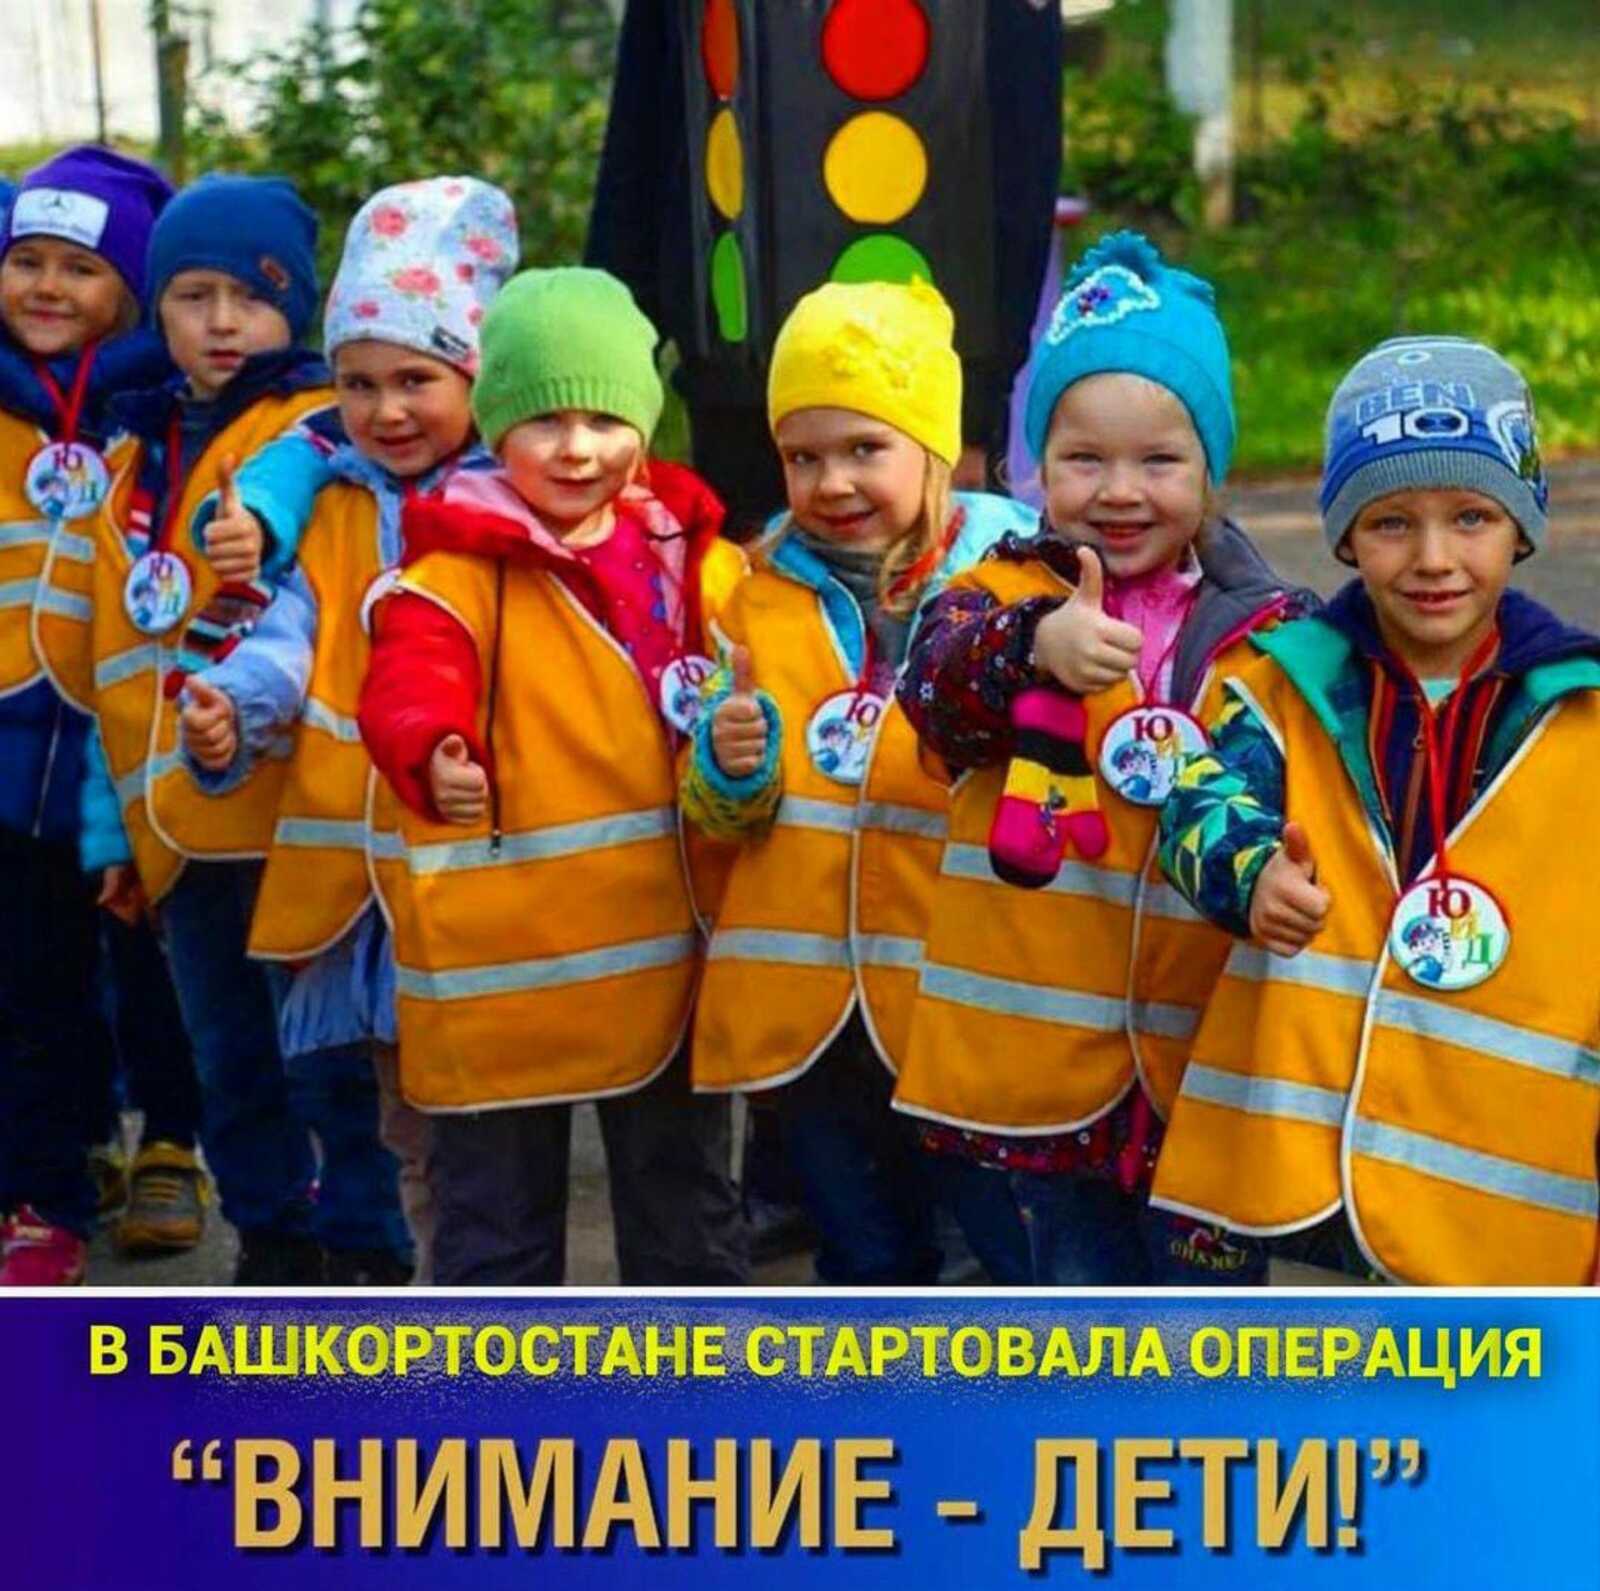 В Башкортостане ГИБДД и органы образования с сегодняшнего дня (25 октября) начали проведение профилактических мероприятий «Внимание – дети!»